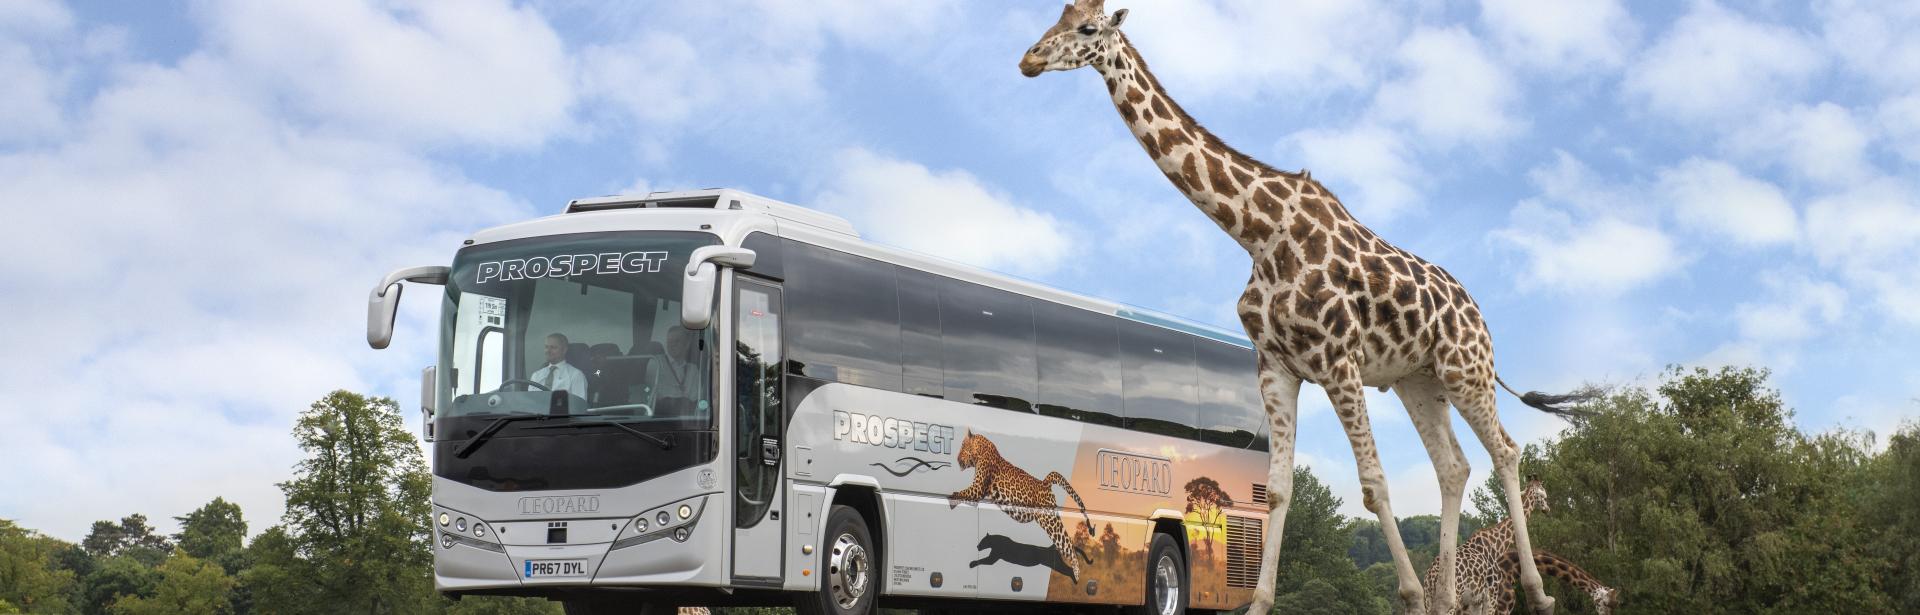 Giraffe Coach 03.jpg